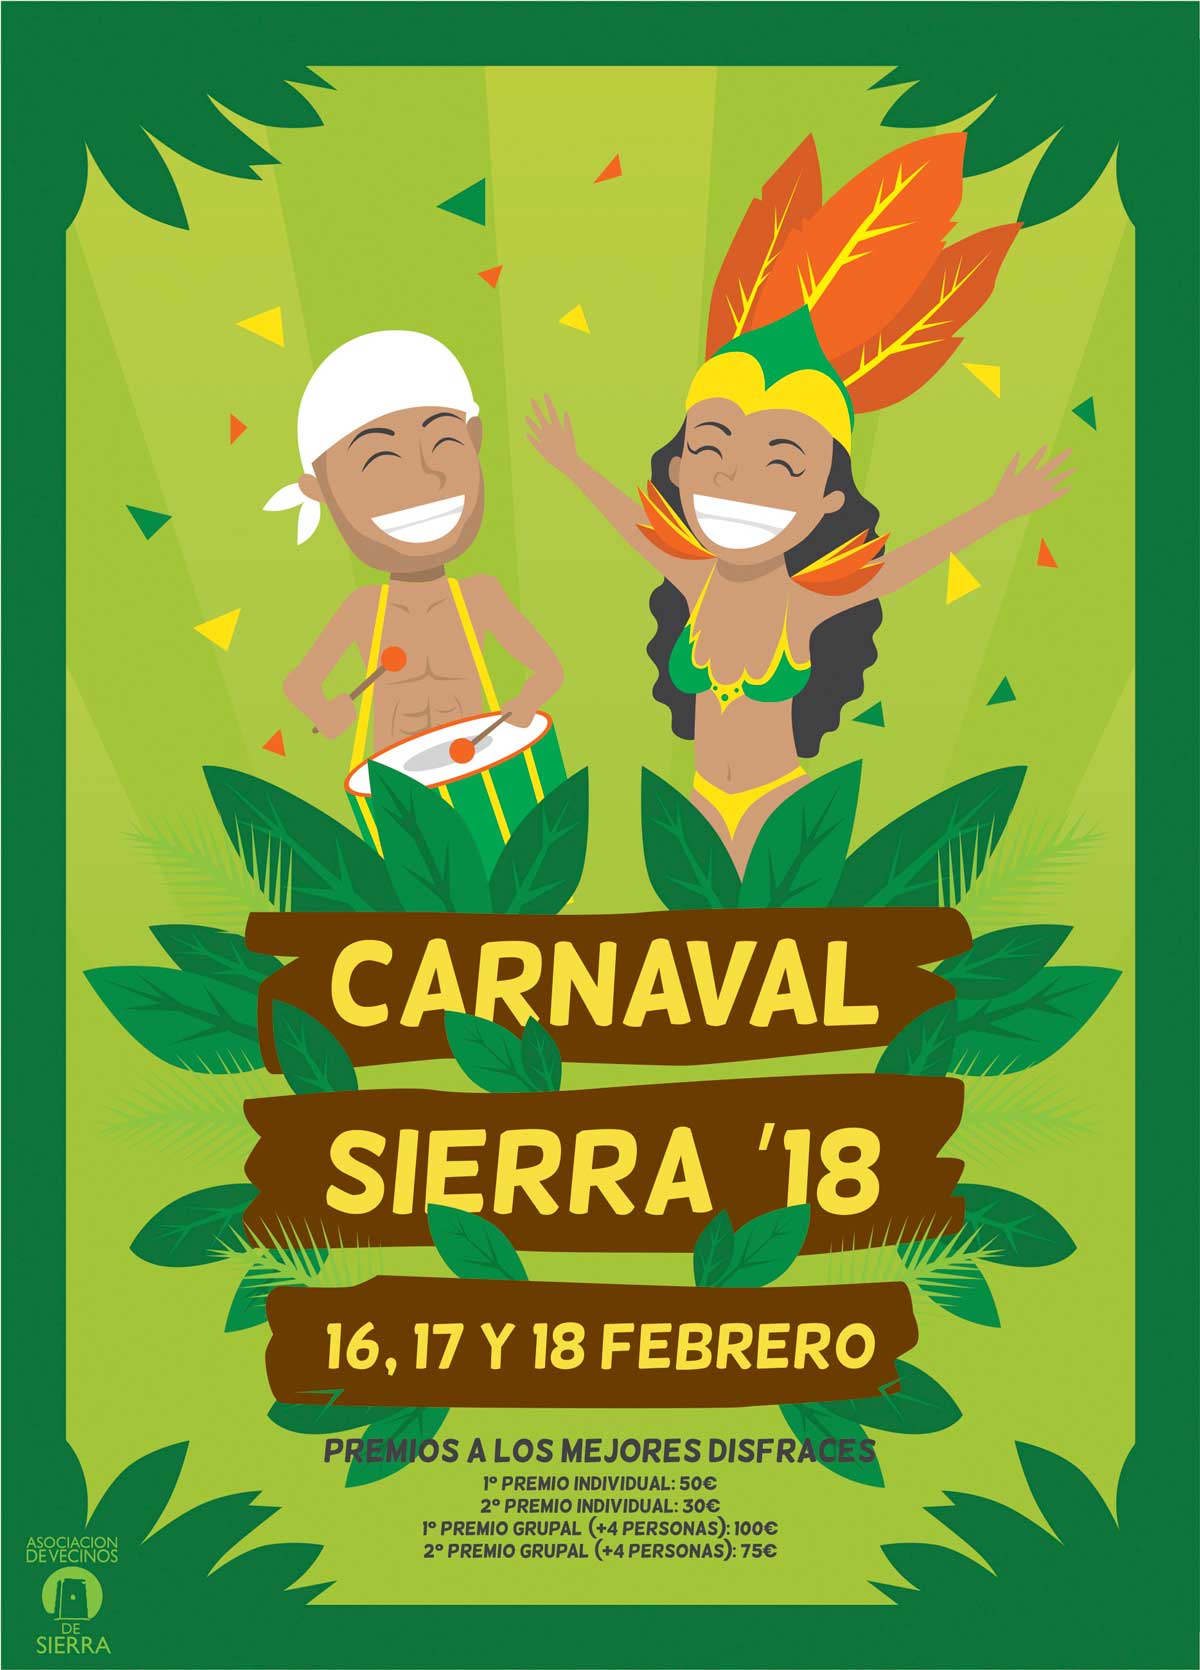 Carnaval Sierra 1 (2018) - Asociacion de Vecinos de Sierra - vecinosdesierra